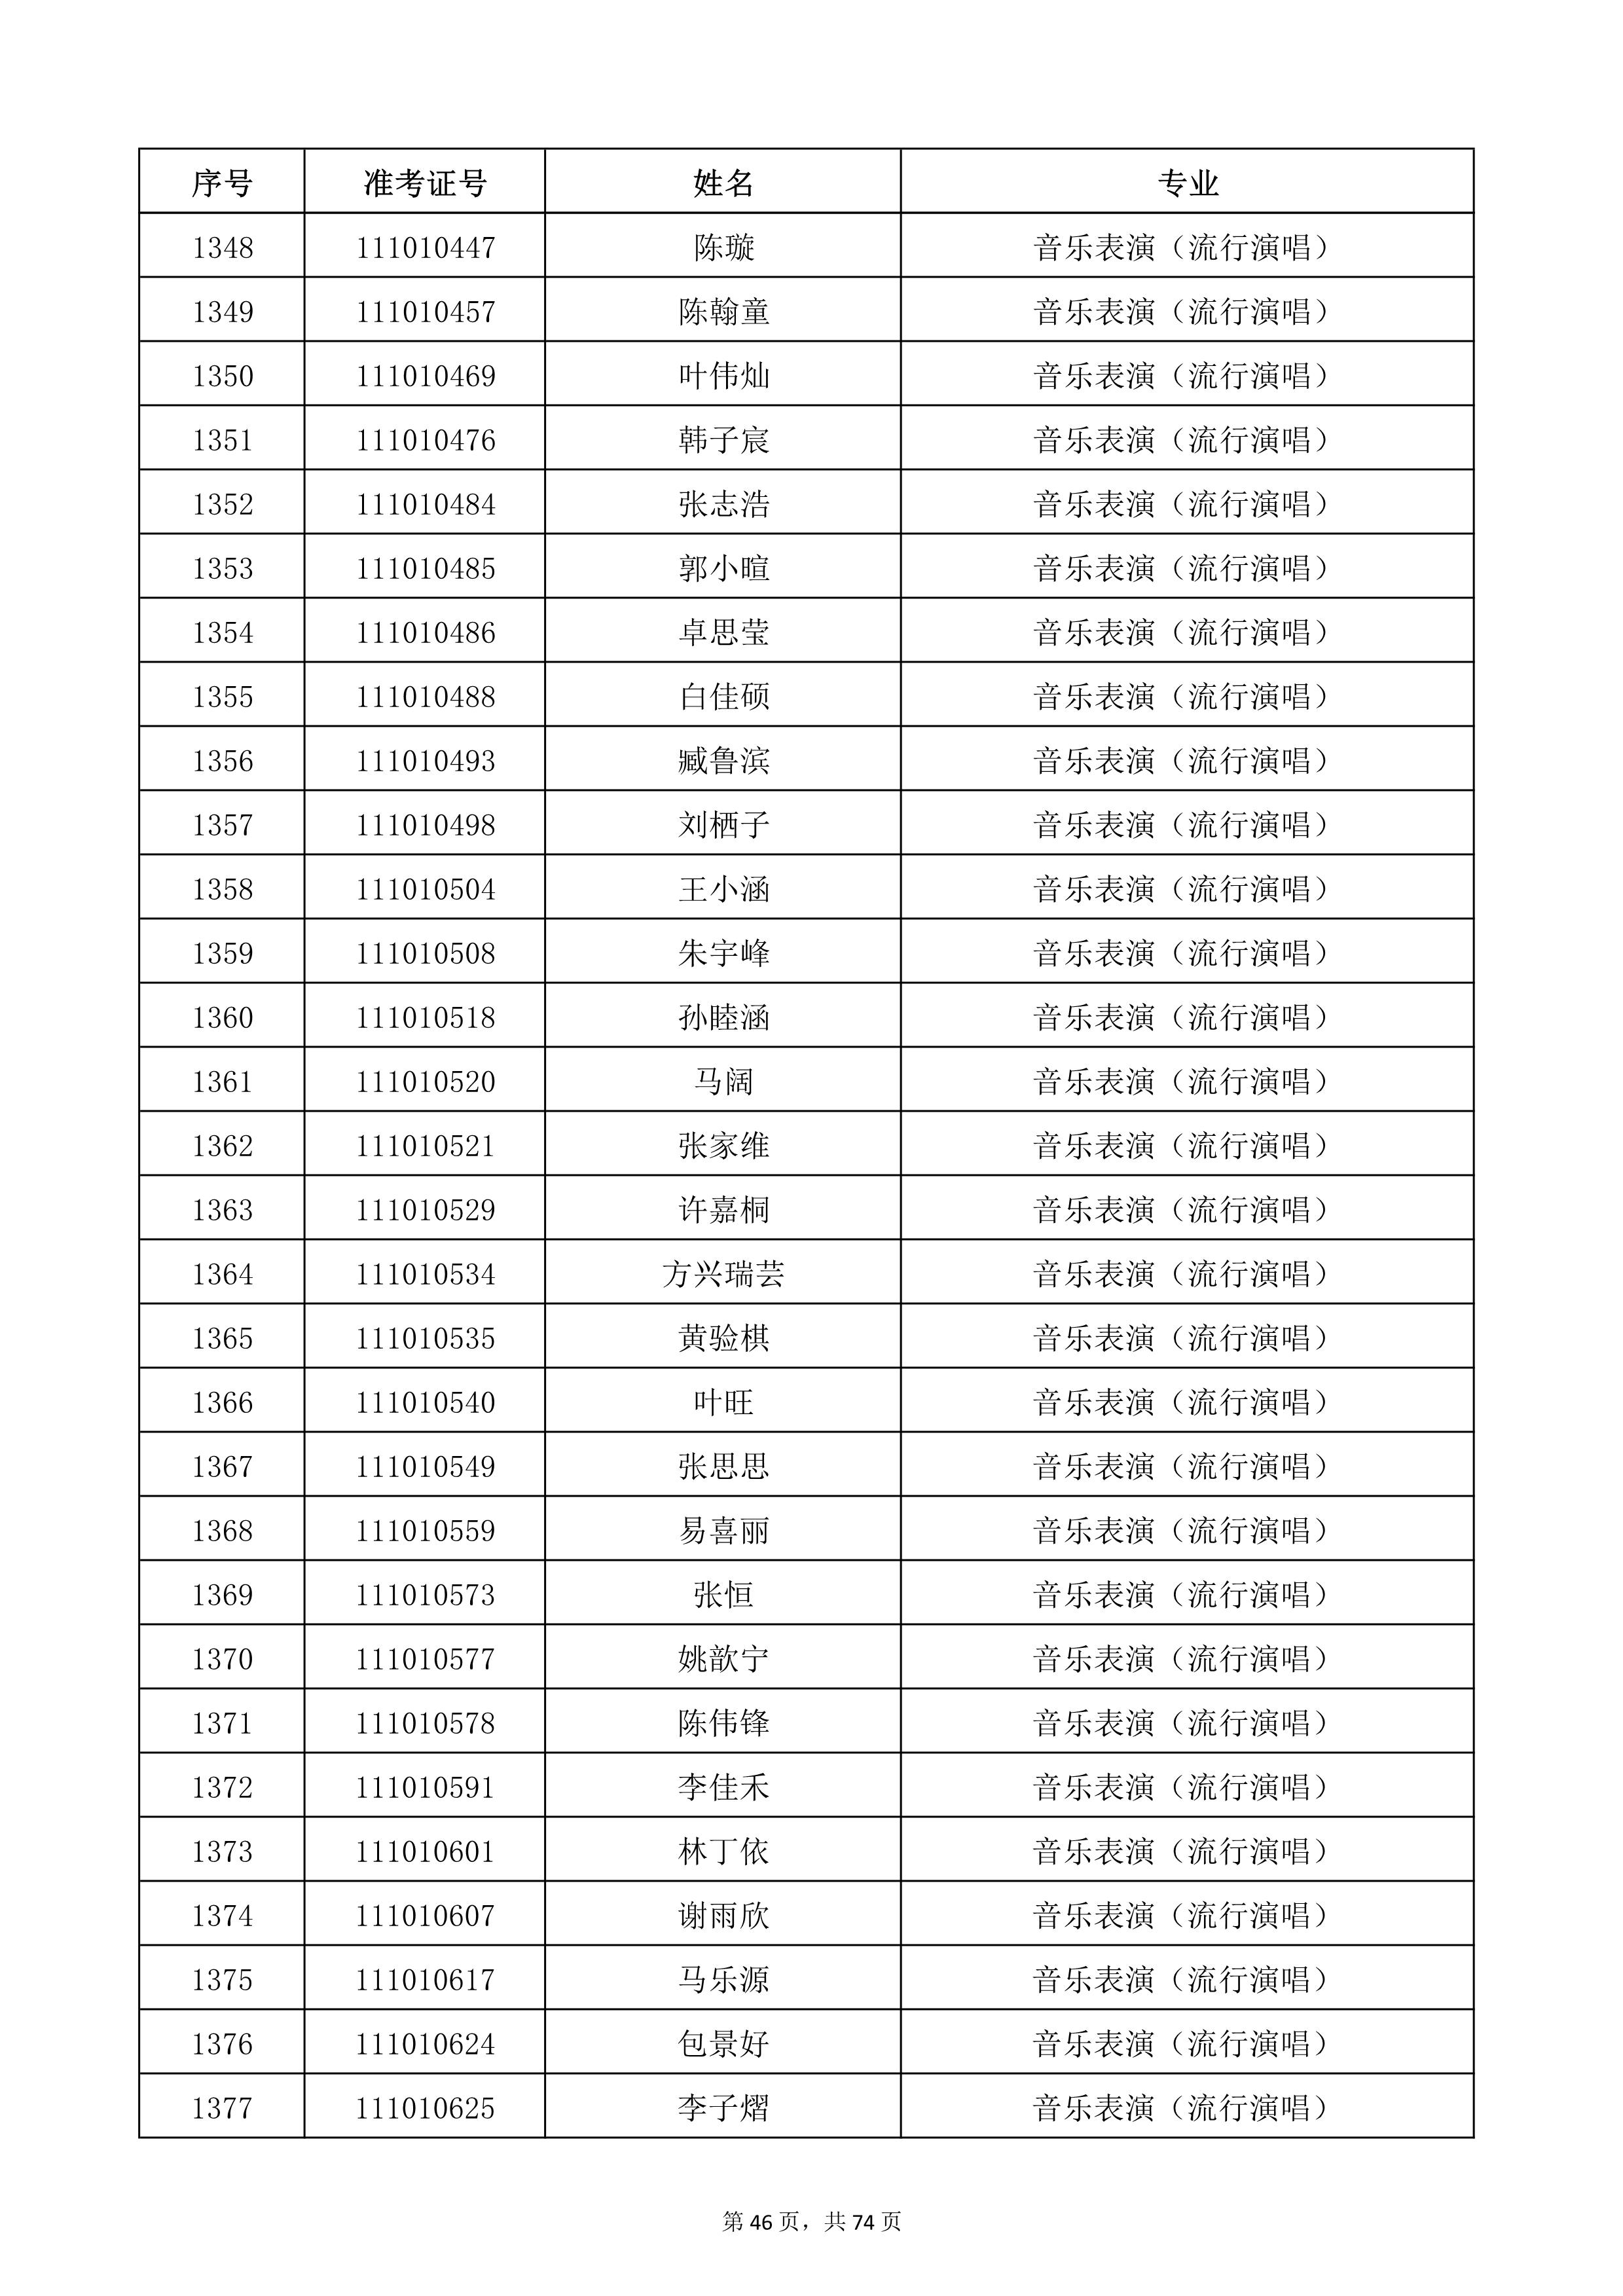 天津音乐学院2022年本科招生考试复试名单_46.jpg